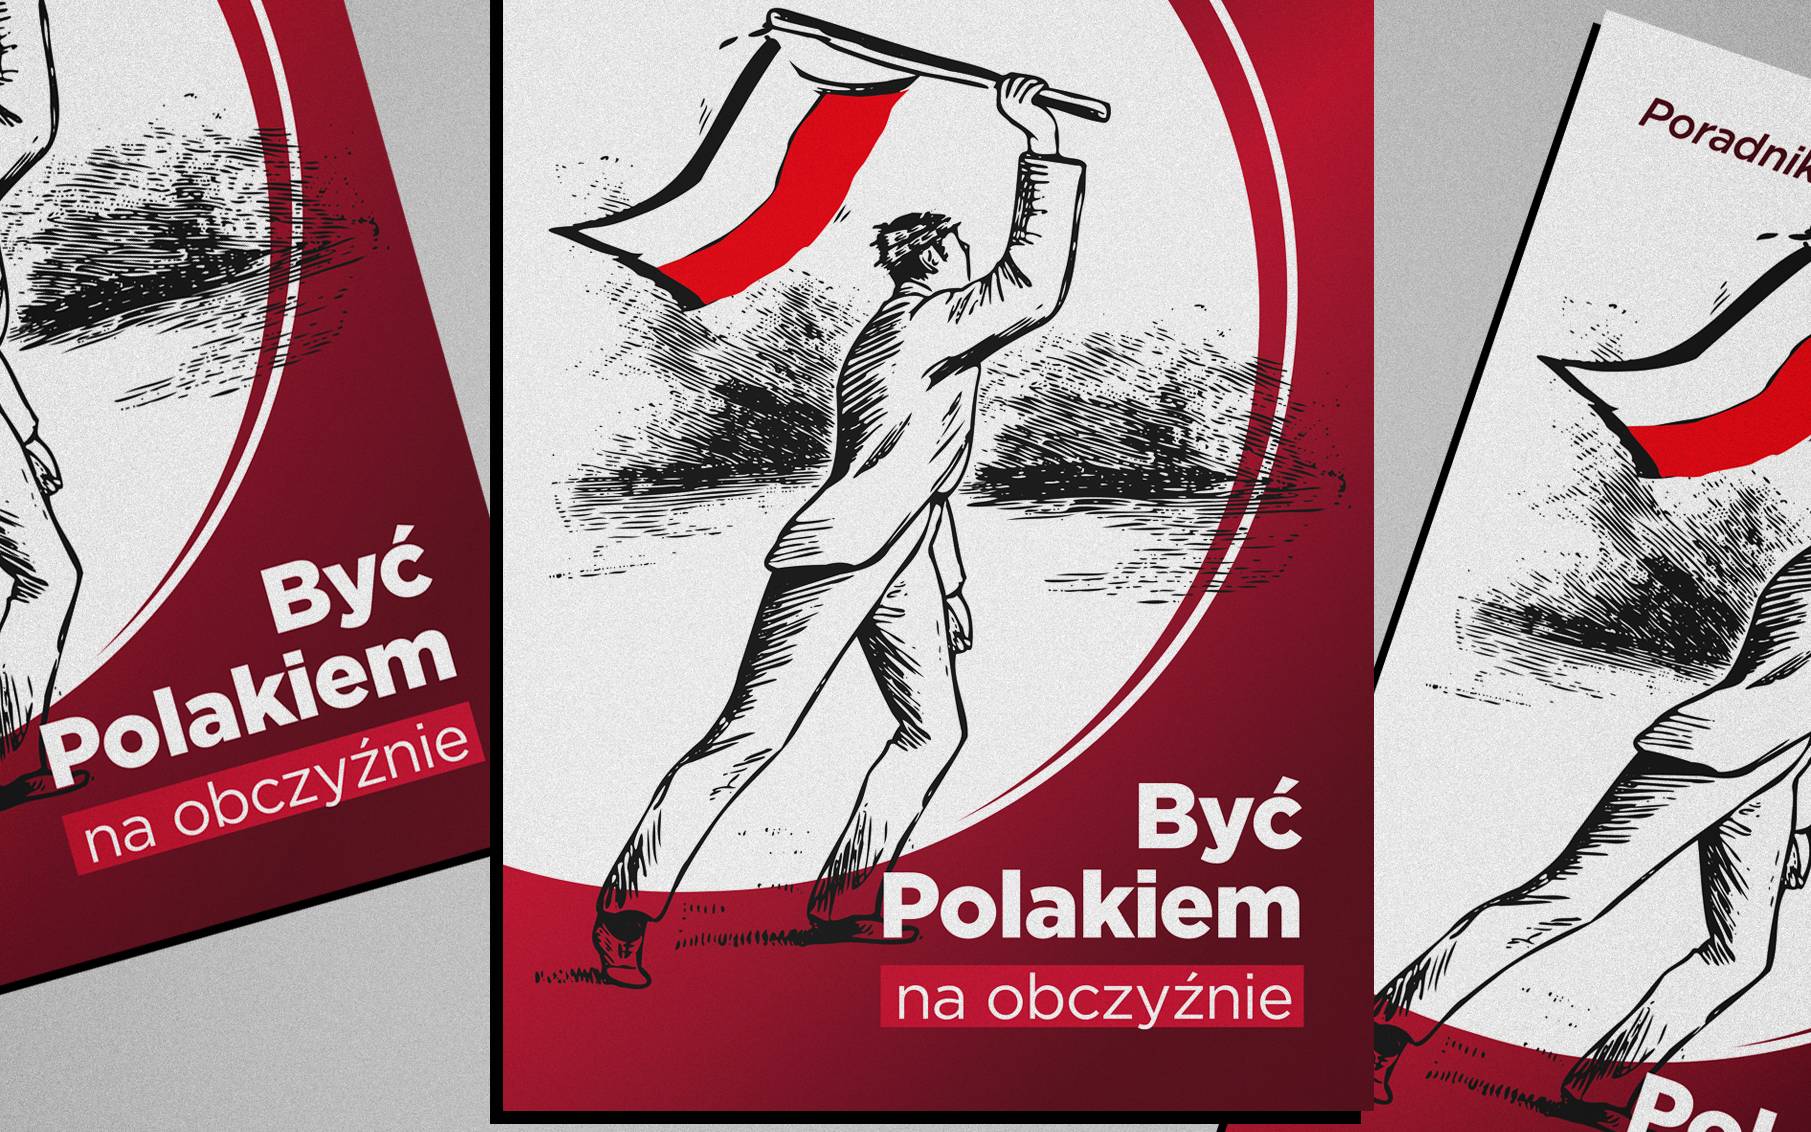 Na ilustracji 3 poradniki. Na ilustracji poradnika rysunek mężczyzny z flagą Polski. Na głowie ma coś, co przypomina koronę cierniową